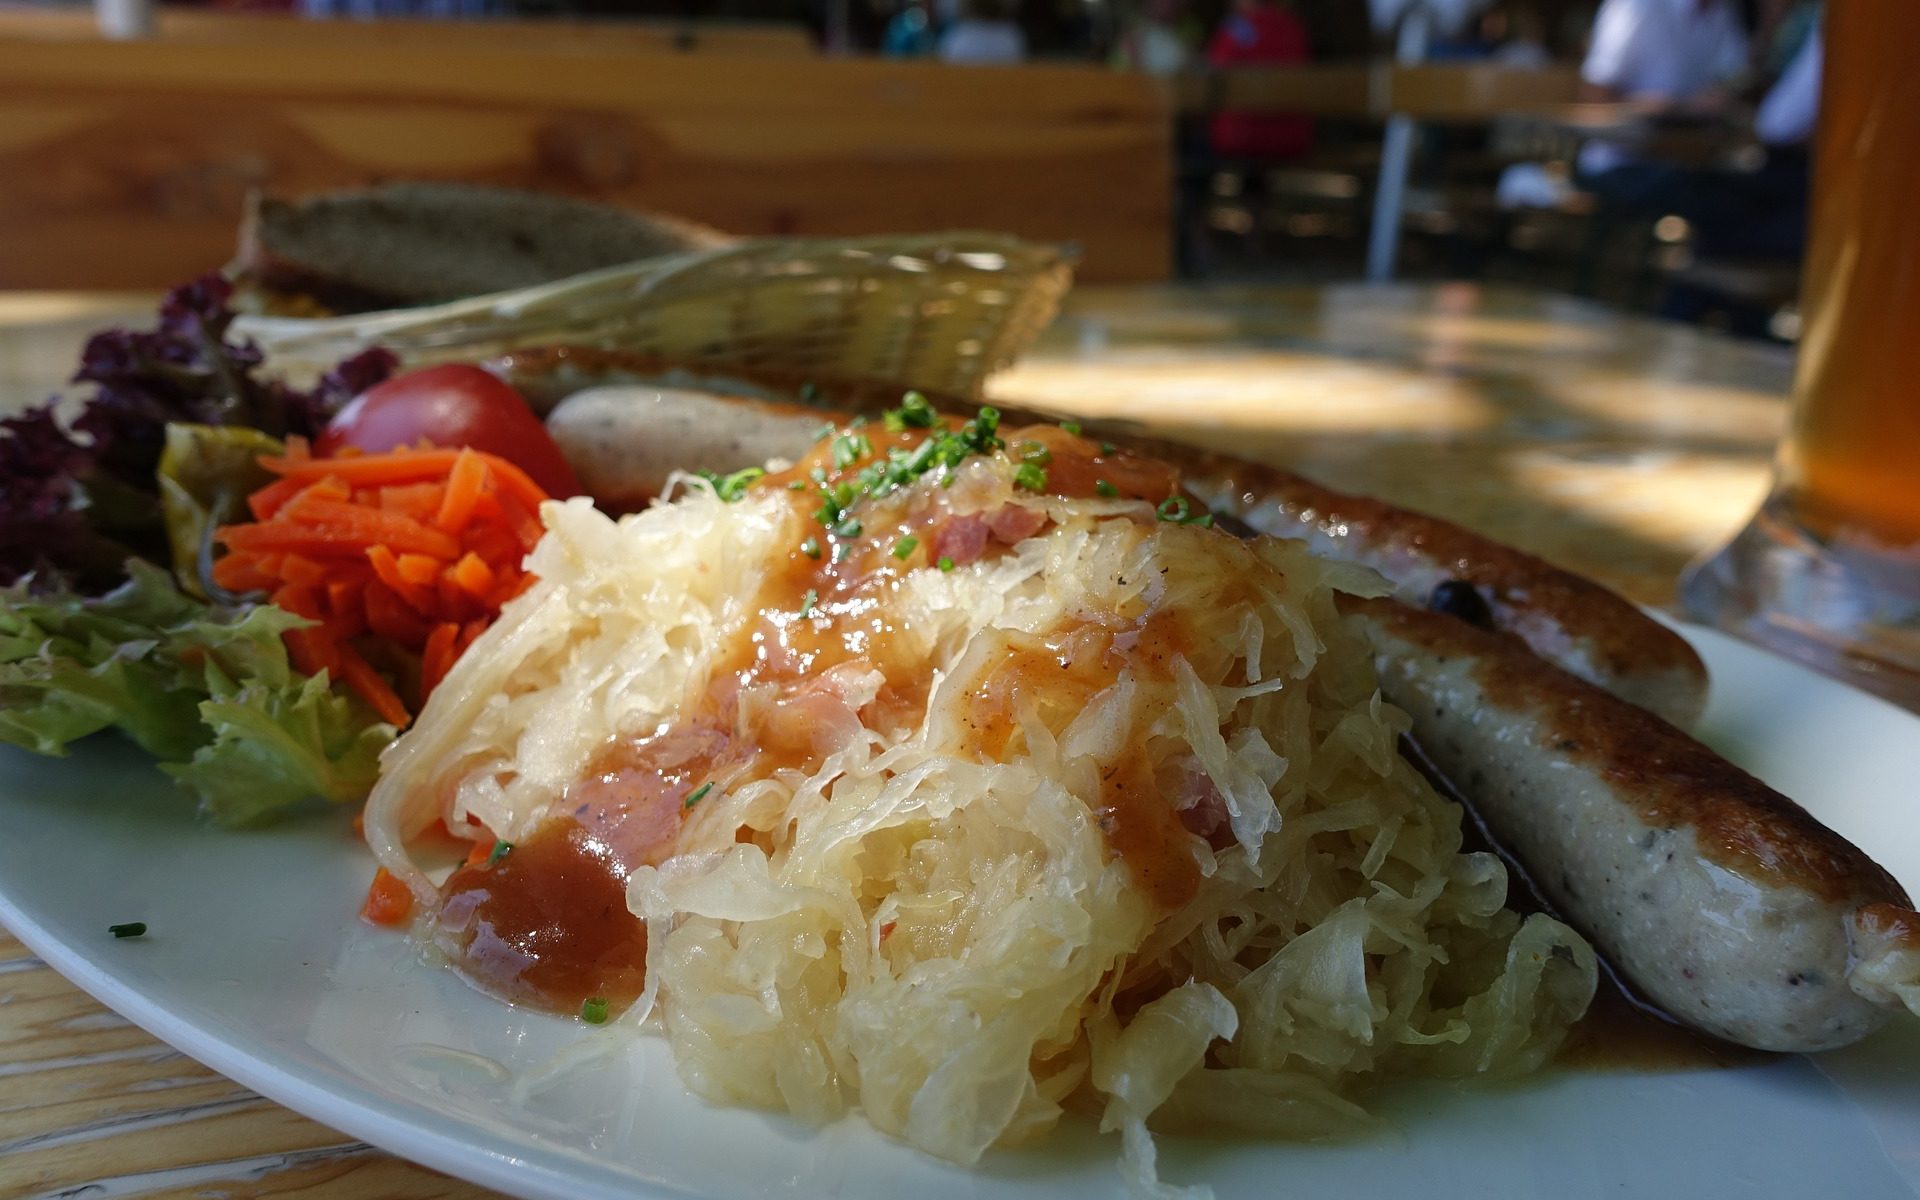 Eat: Sauerkraut, the Superfood?